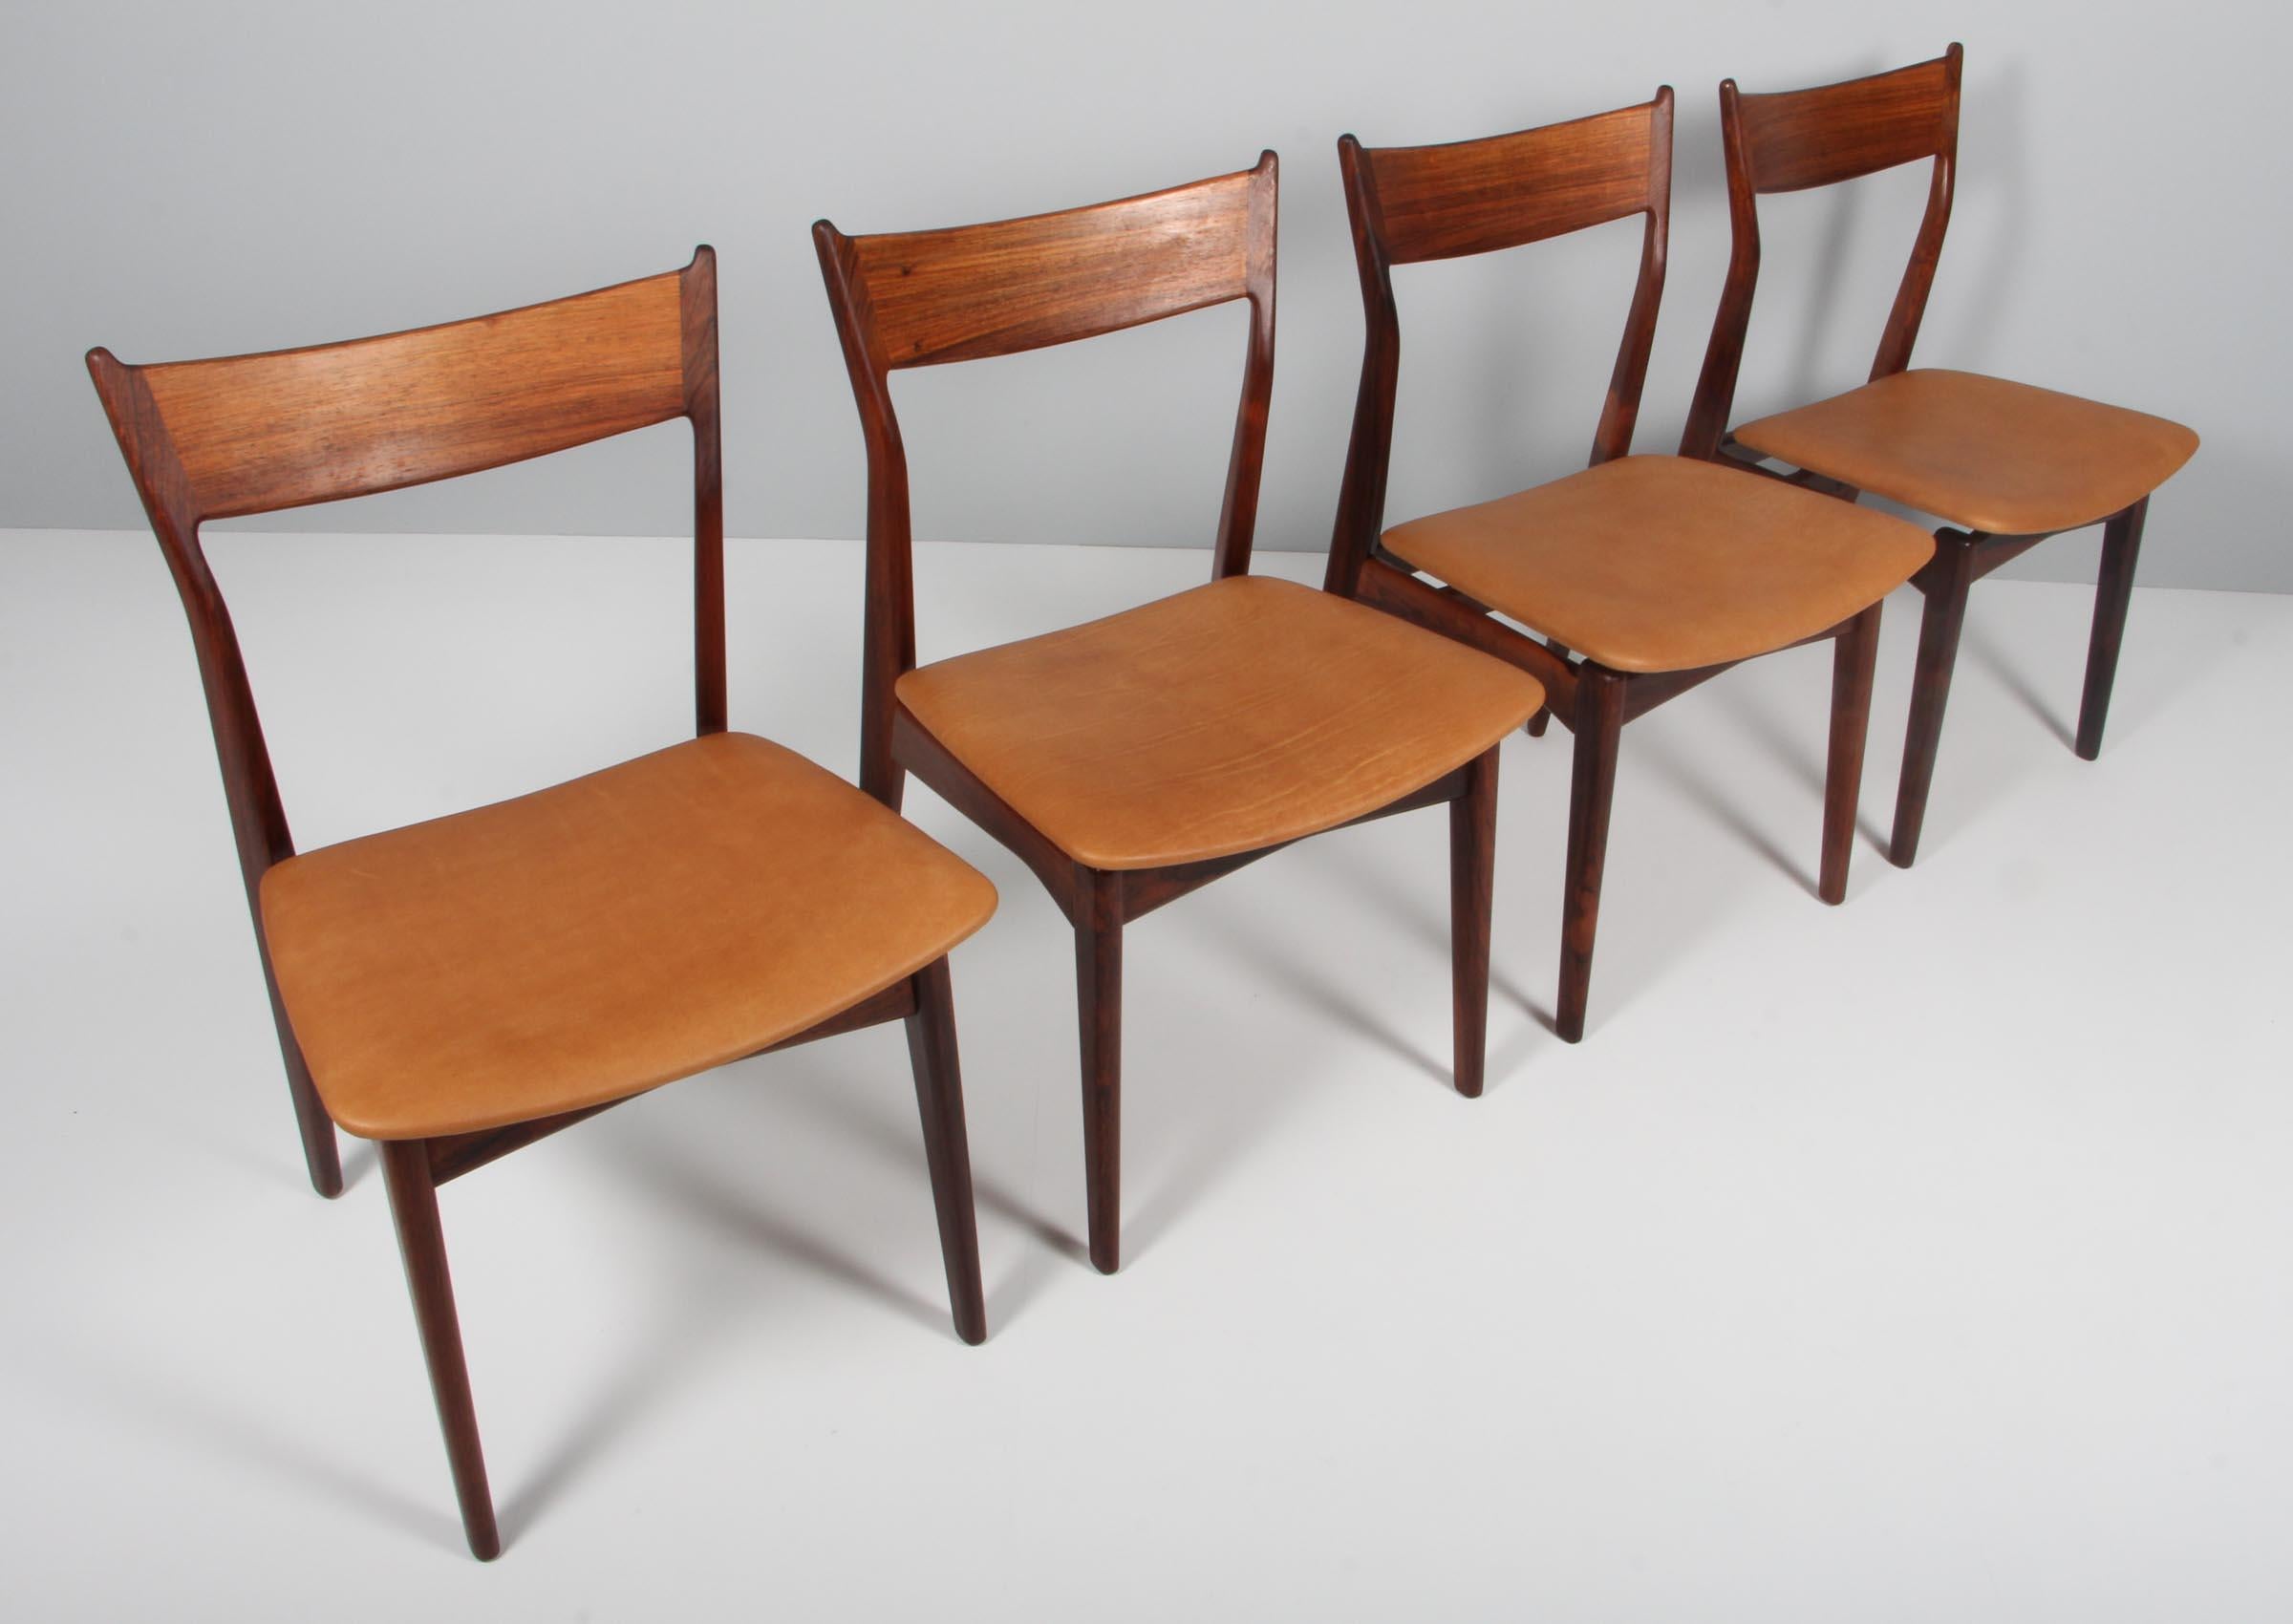 HP Hansen Satz von vier Esszimmerstühlen neu gepolstert mit Anilinleder.

Hergestellt aus teilweise massivem Palisanderholz.

Hergestellt von HP Hansen in Dänemark in den 1960er Jahren.